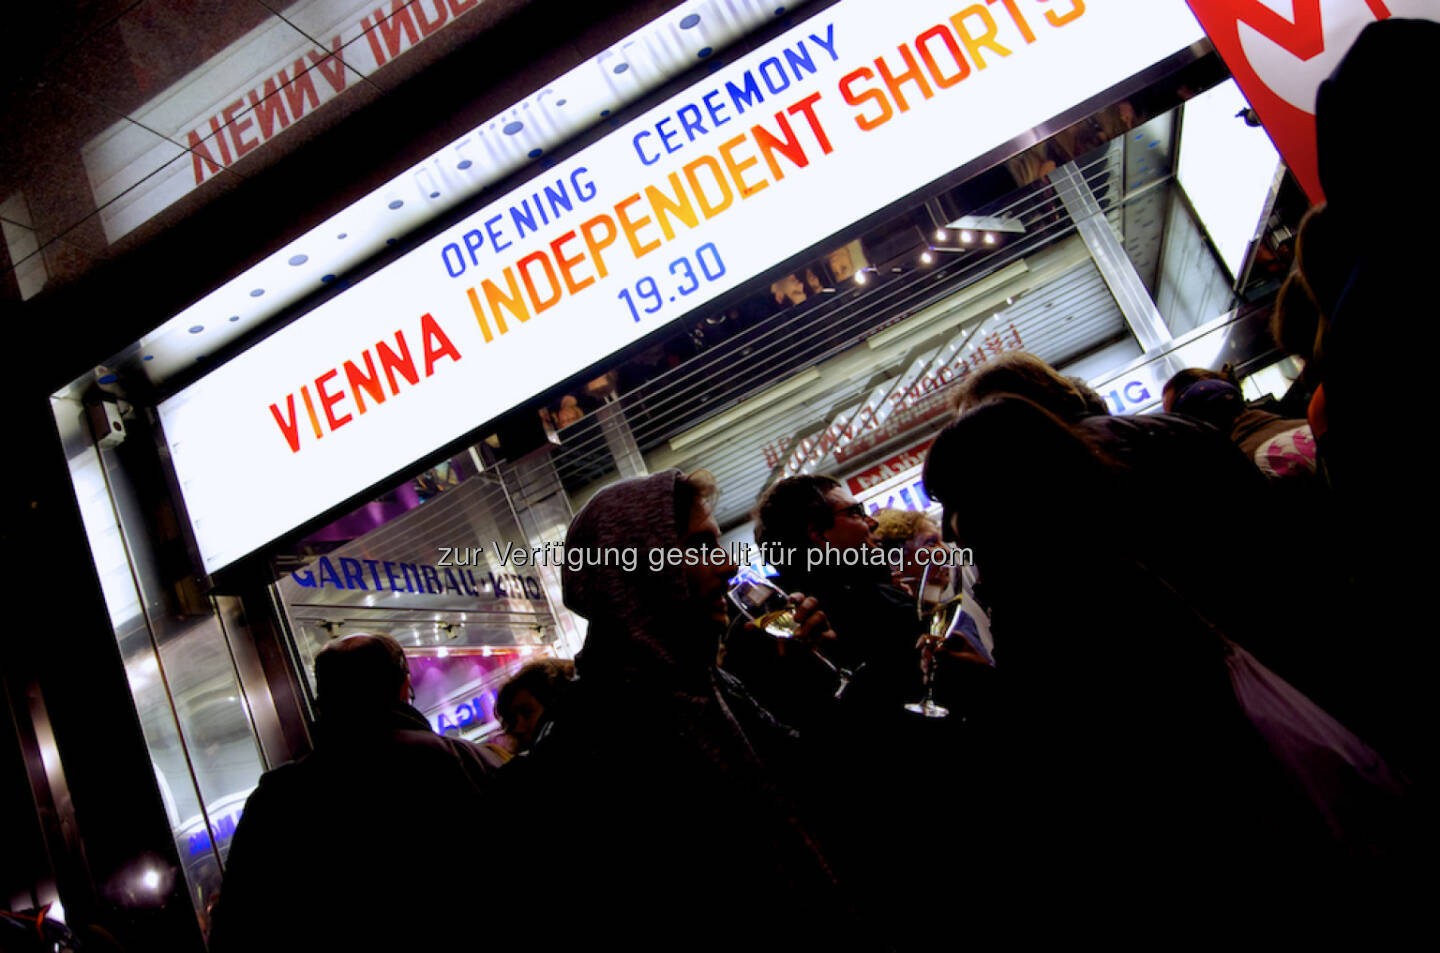 VIS Vienna Independent Shorts : Das Kurzfilmfestival VIS Vienna Independent Shorts mit prominenten Filmen und Gästen eröffnet am 25. Mai im Gartenbau-Kino : Fotocredit: VIS/Valent